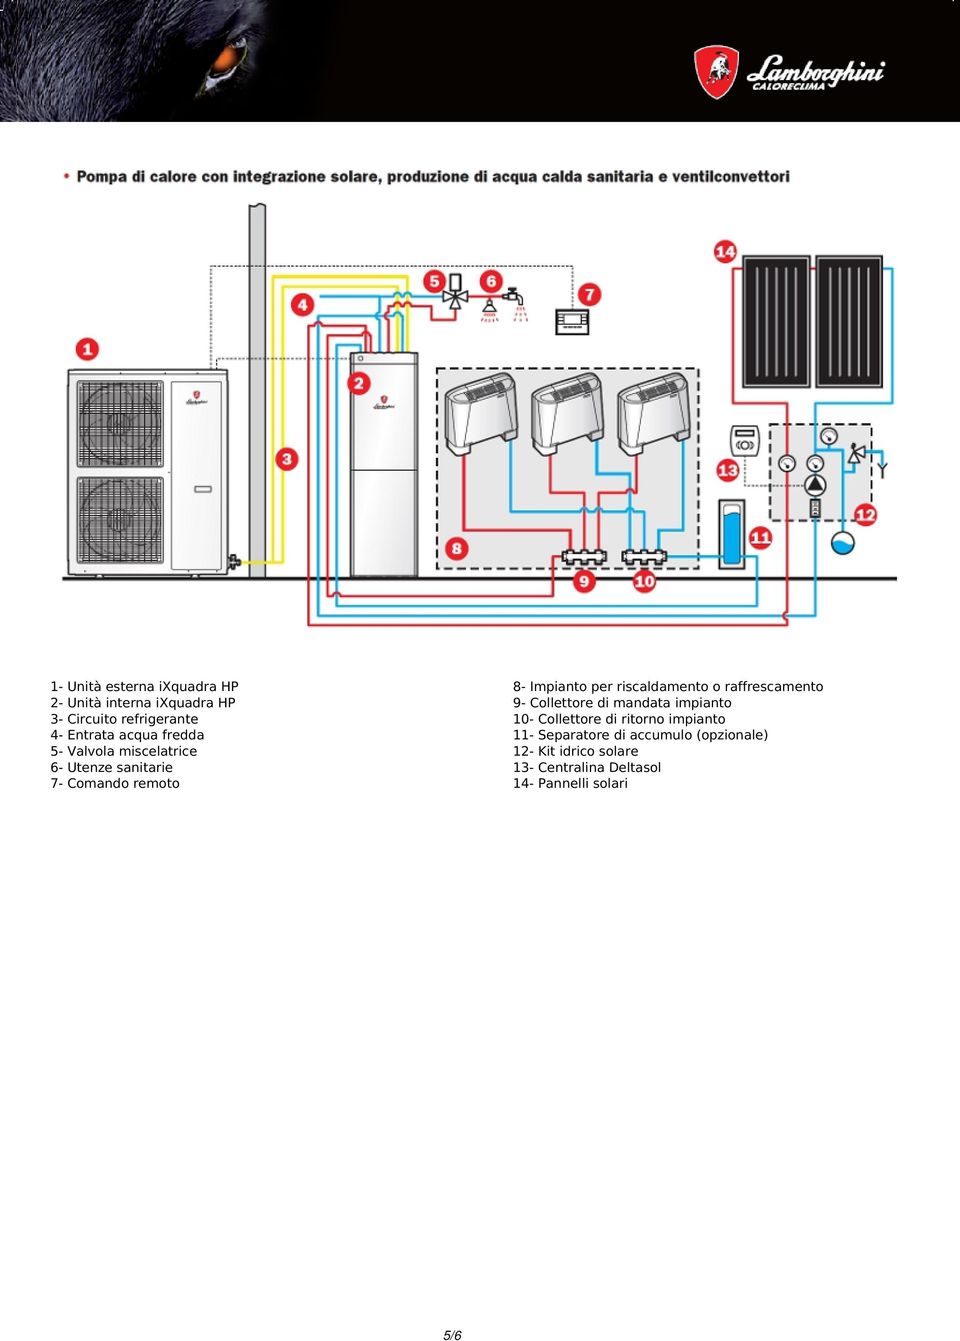 impianto 4- Entrata acqua fredda 11- Separatore di accumulo (opzionale) 5- Valvola miscelatrice